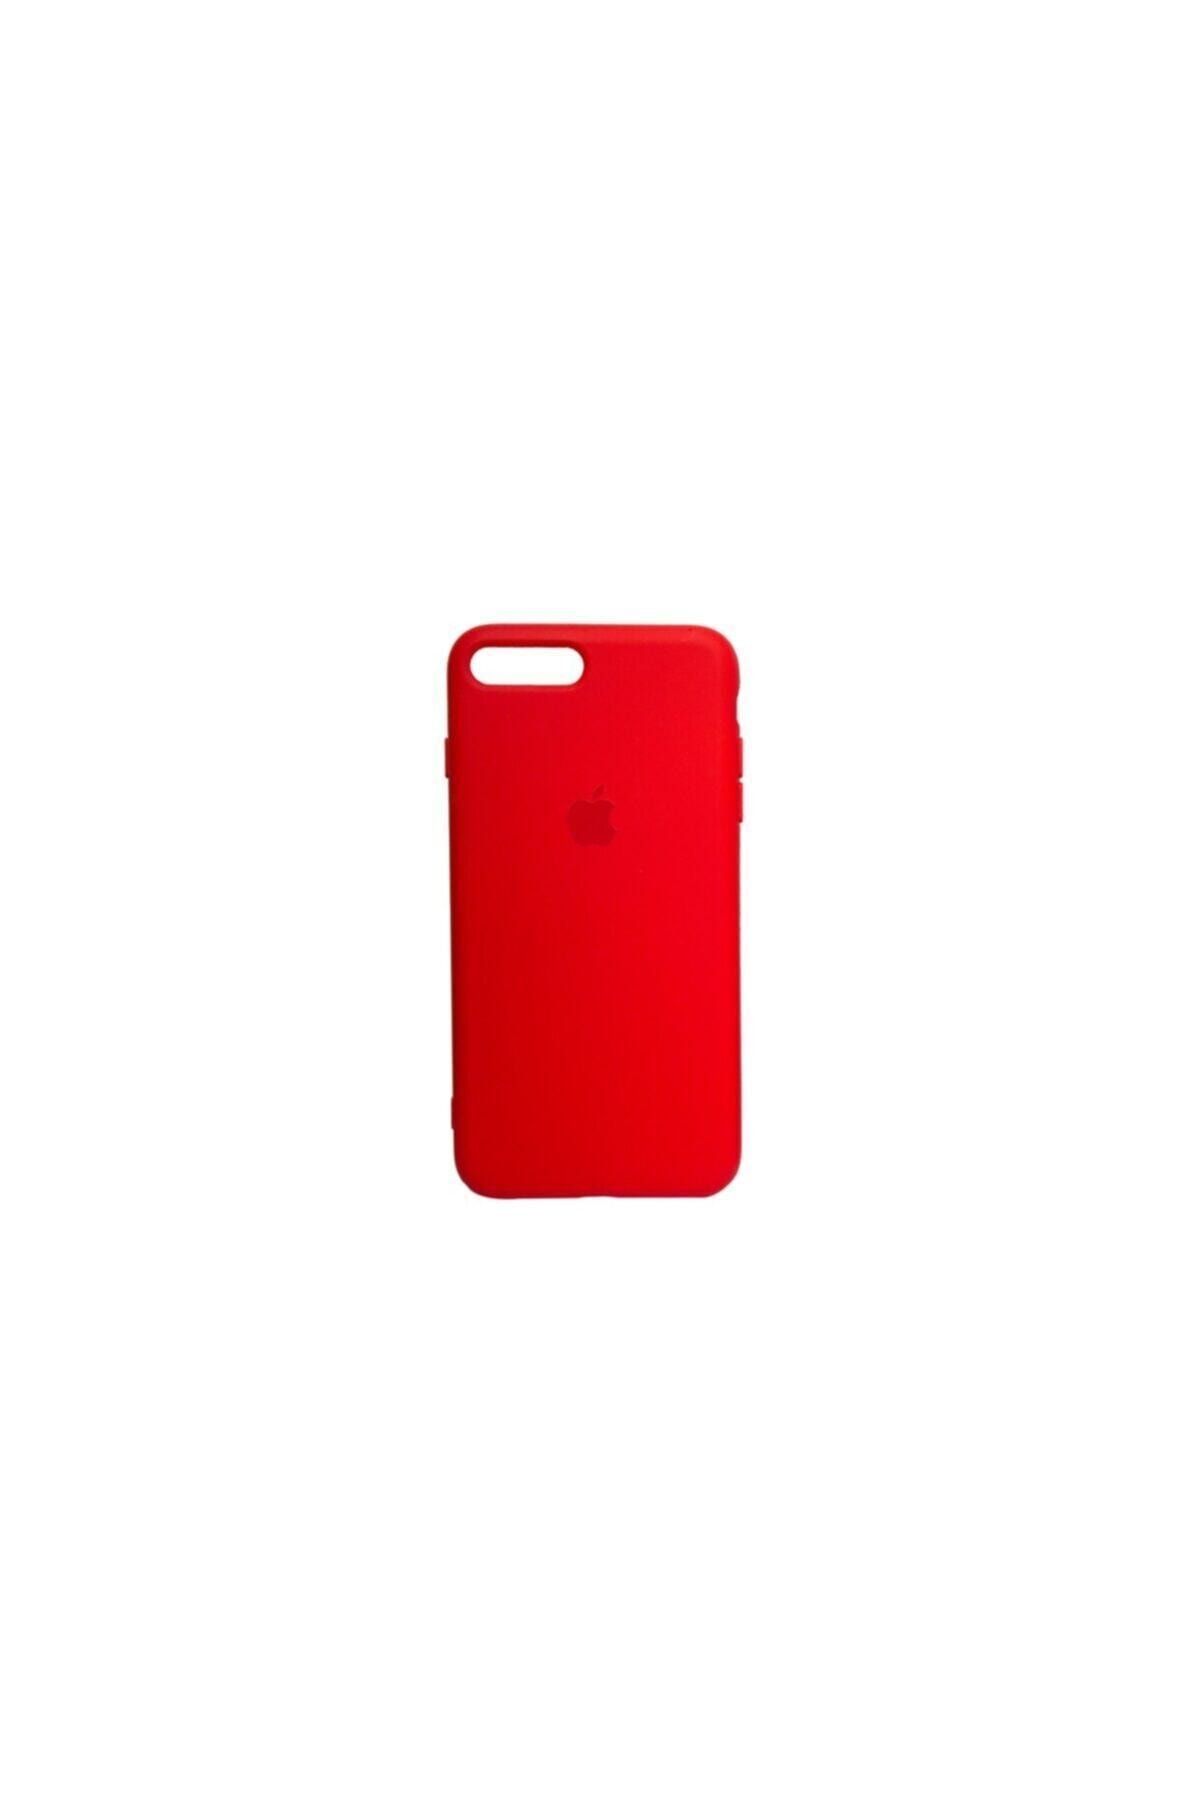 Mopal Iphone 7 Plus Uyumlu Logolu Iç Yüzeyi Kadife Altı Kapalı 360° Tam Koruma Silikon Lansman Kılıf